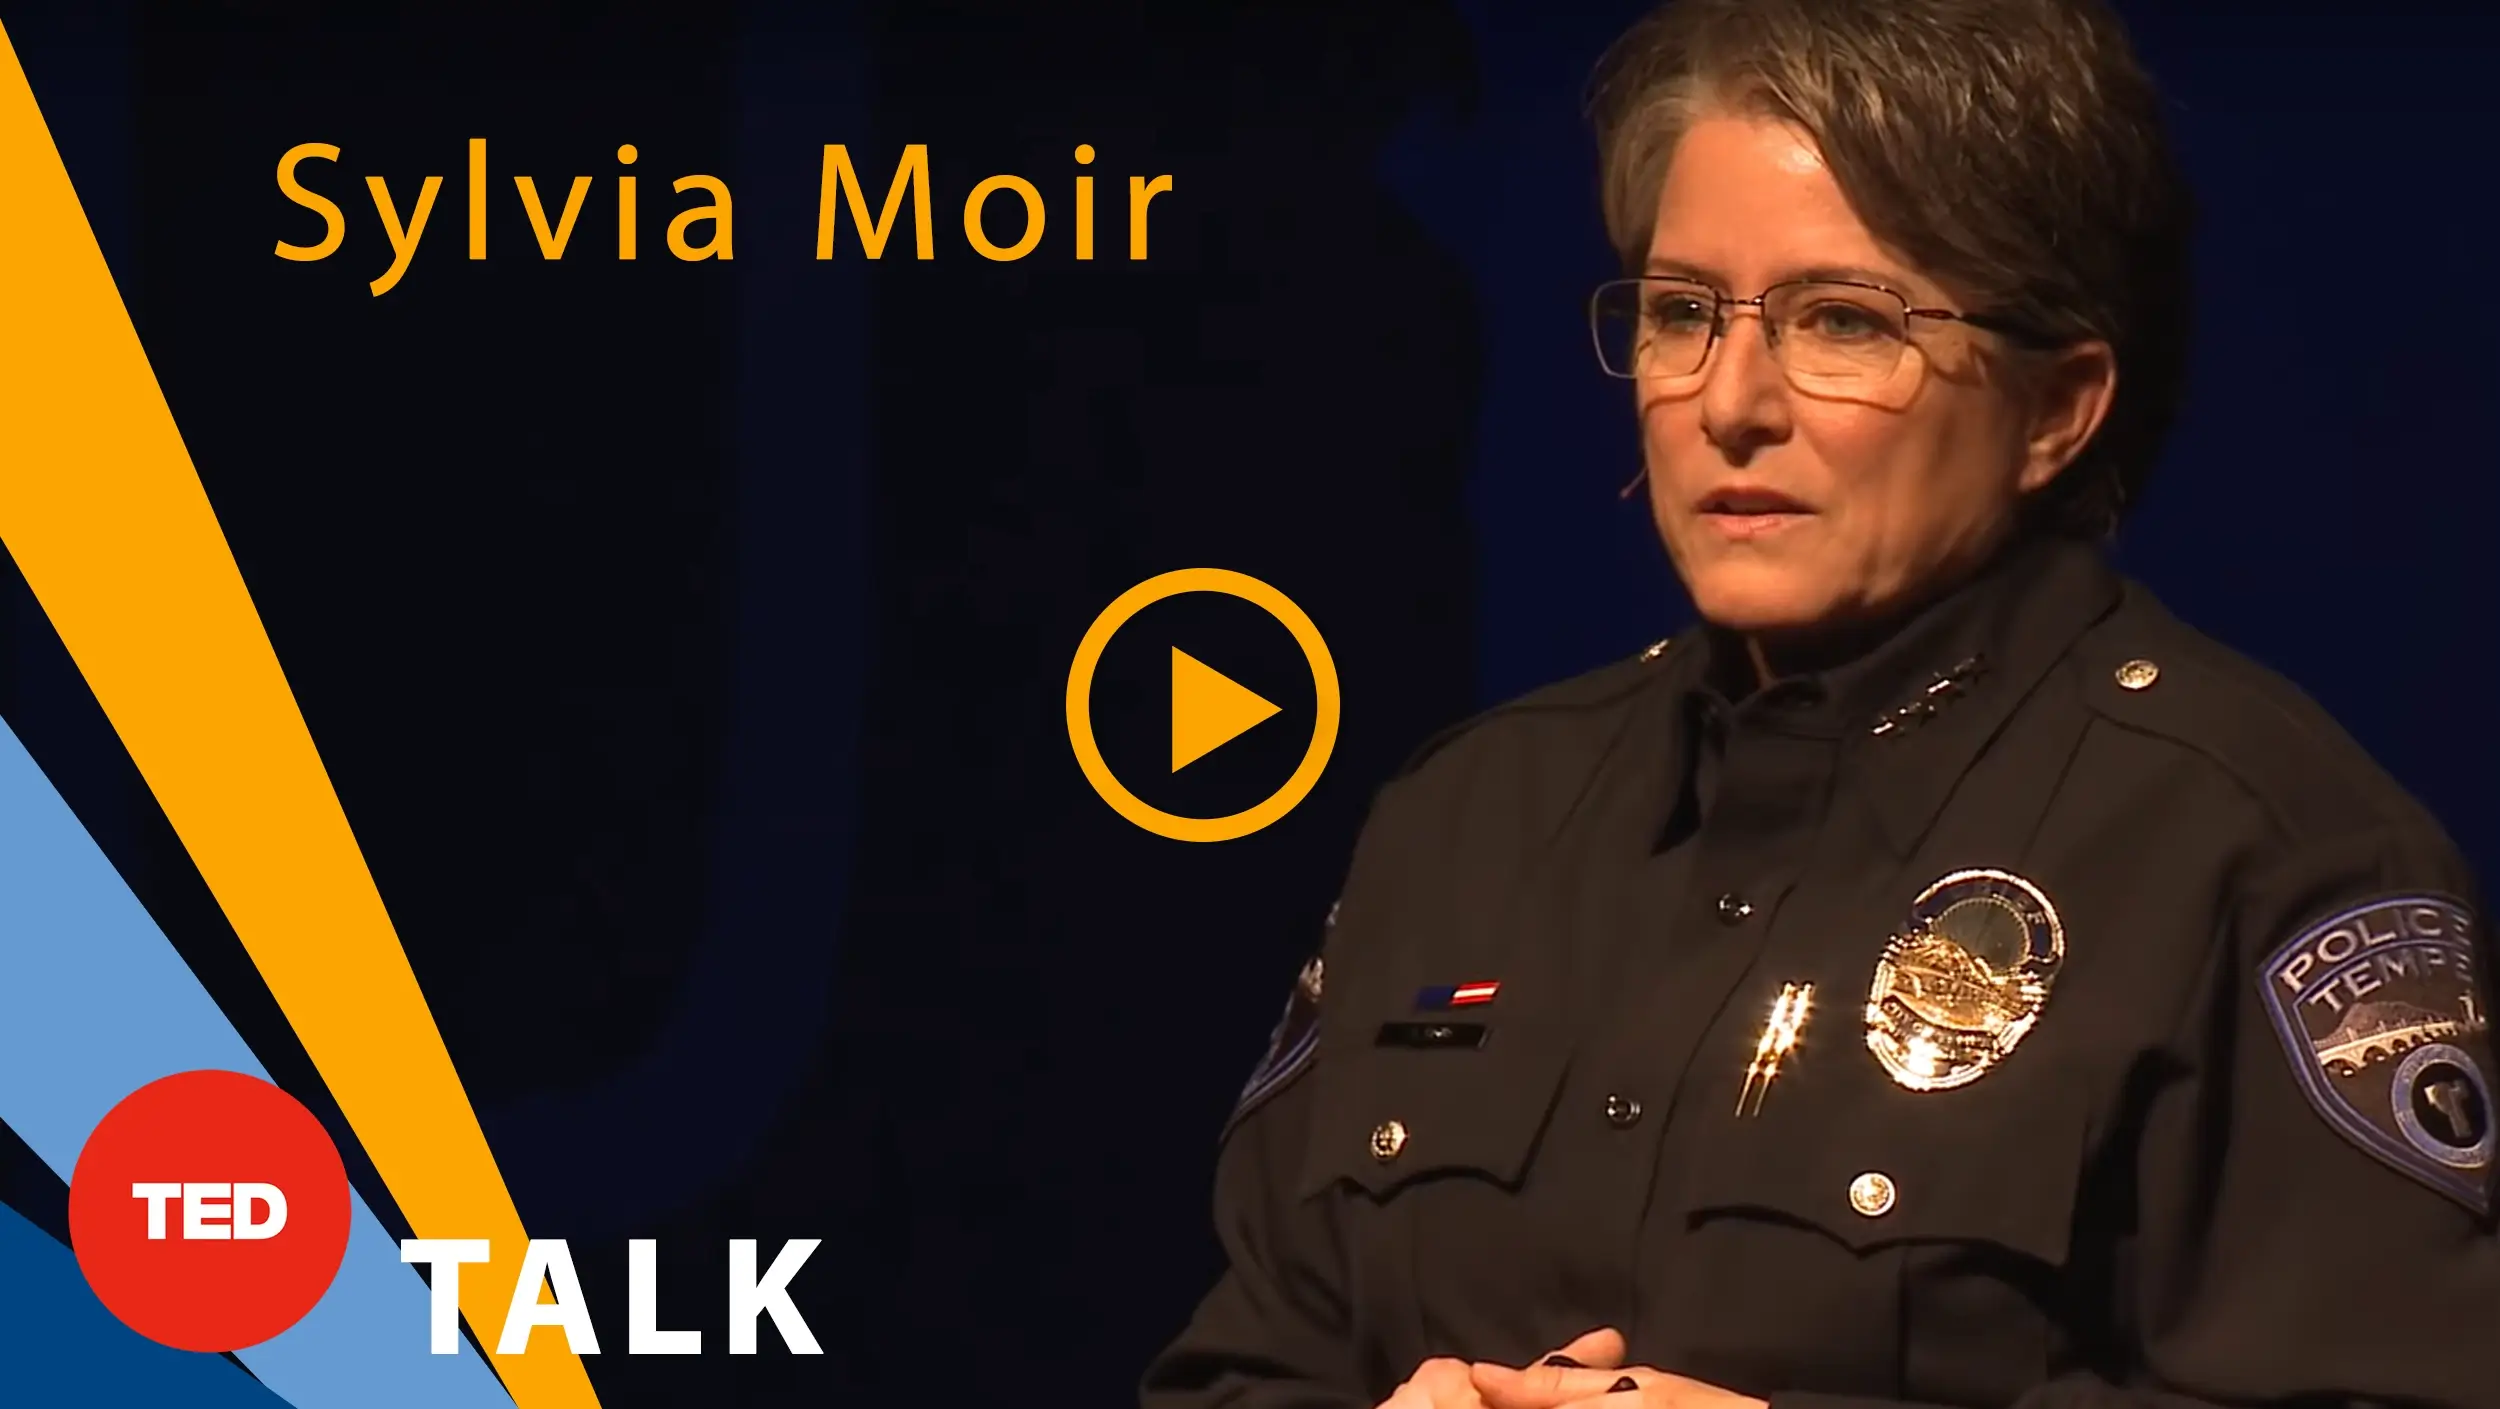 Sylvia Moir at TED Talk